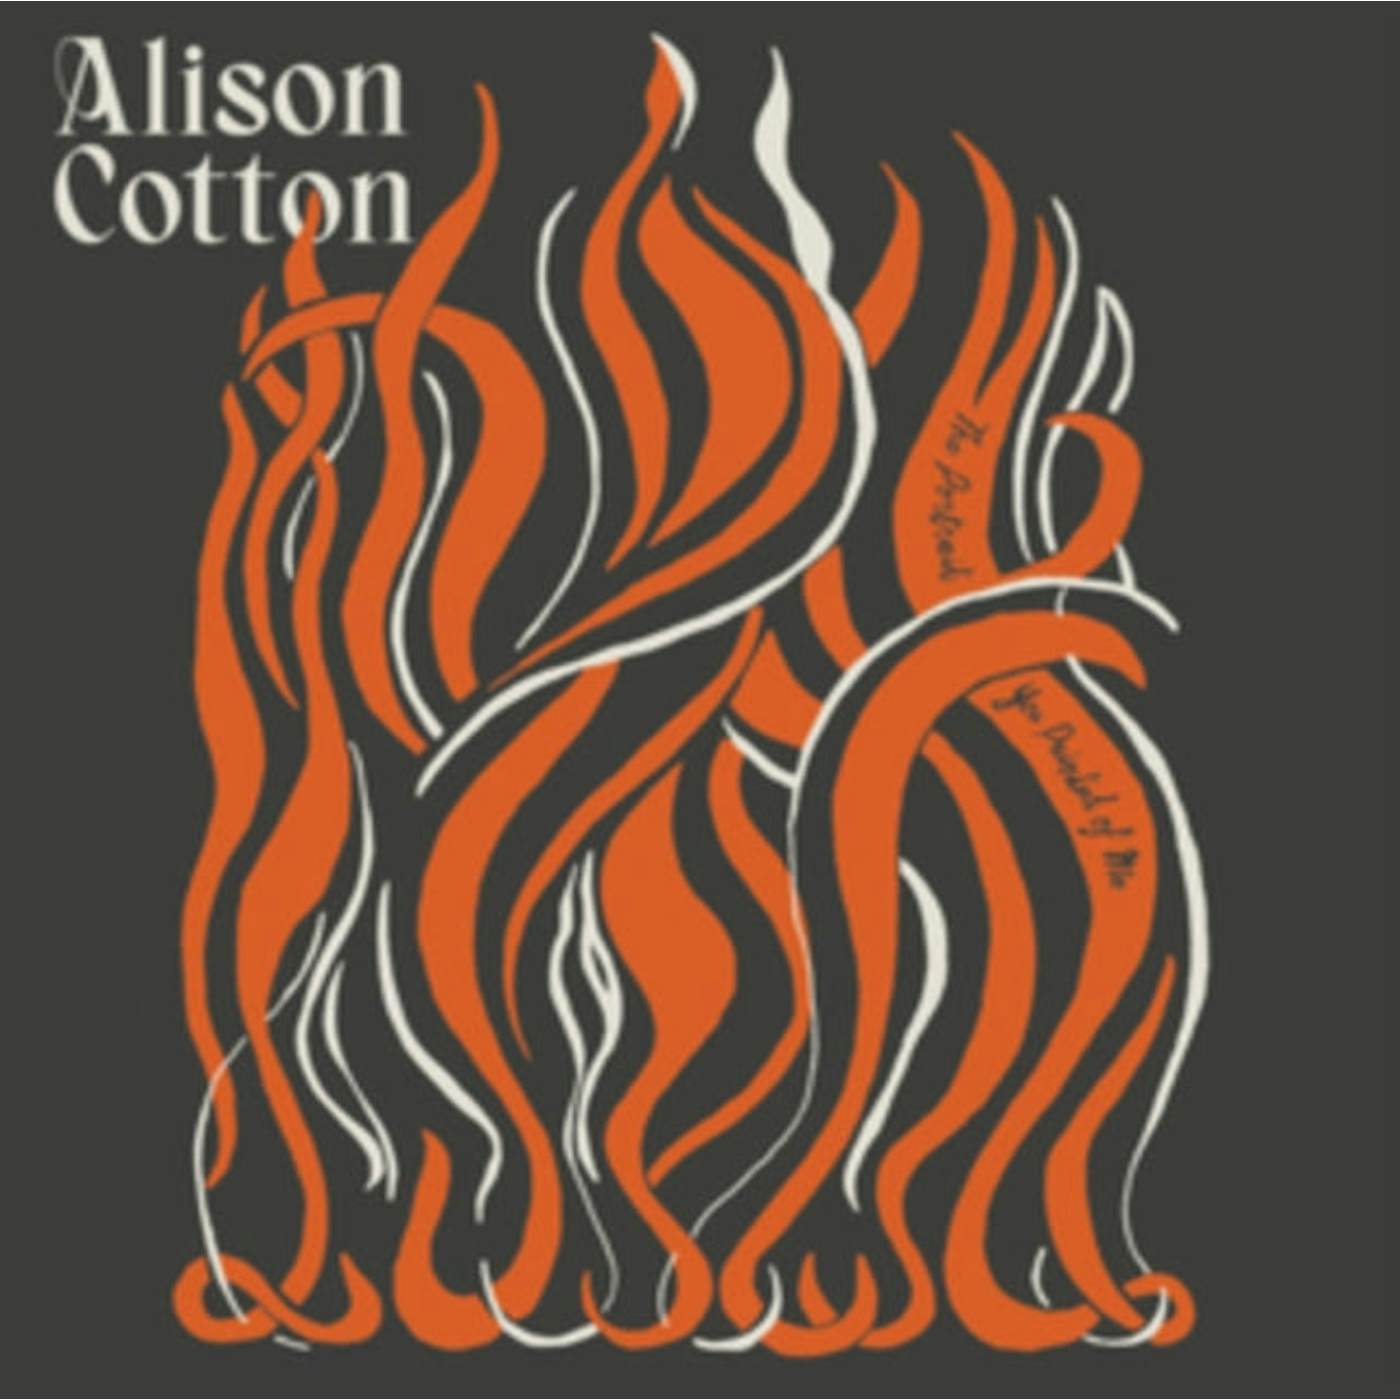 Alison Cotton LP Vinyl Record  The Portrait You Painted Of Me